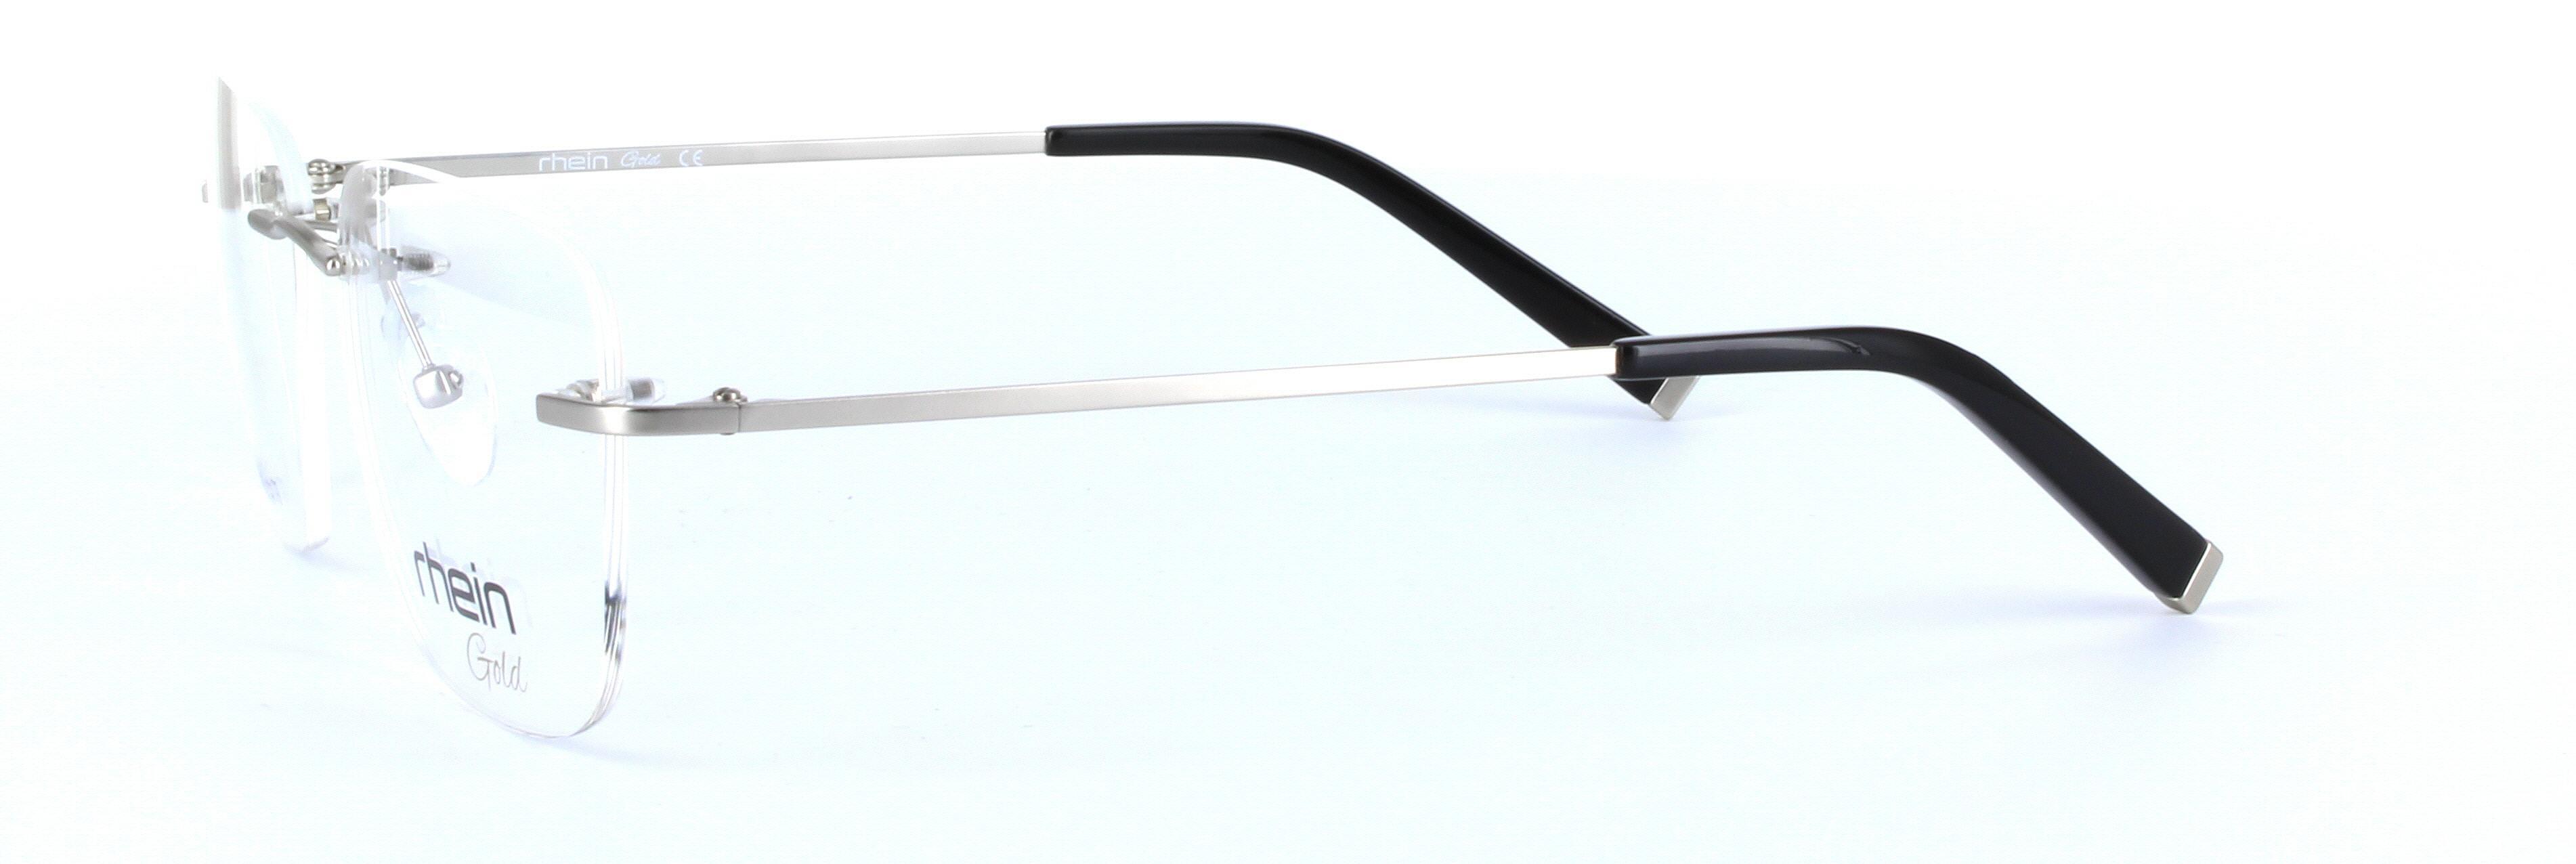 Chandler Titanium Silver Rimless Rectangular Titanium Glasses - Image View 2